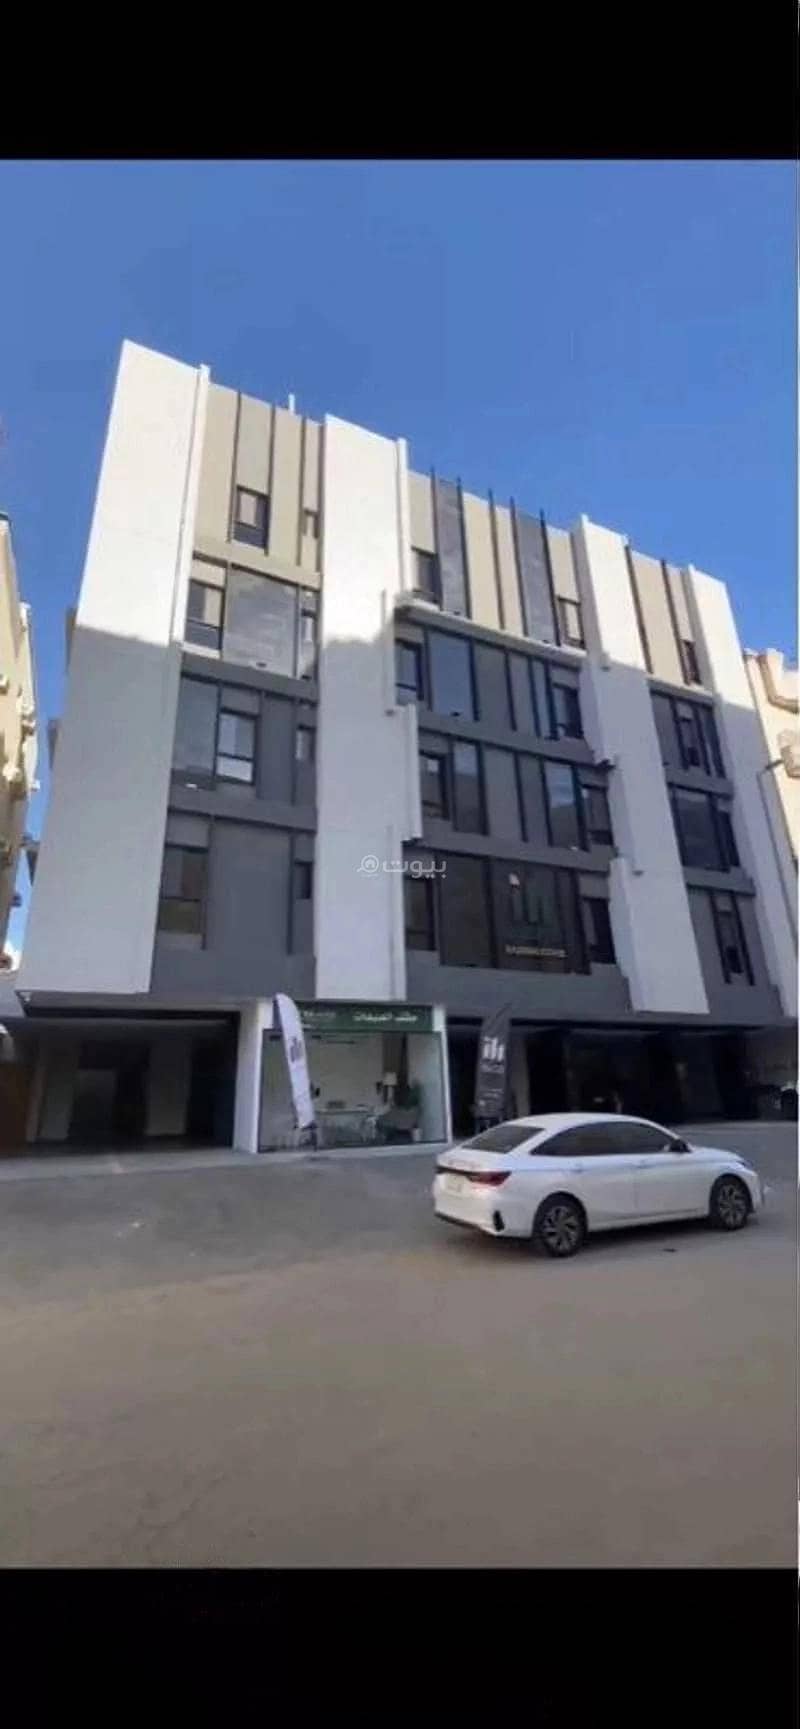 4 Rooms Apartment For Sale - Ahmed Bin Mohammed Al Moksi St, Jeddah